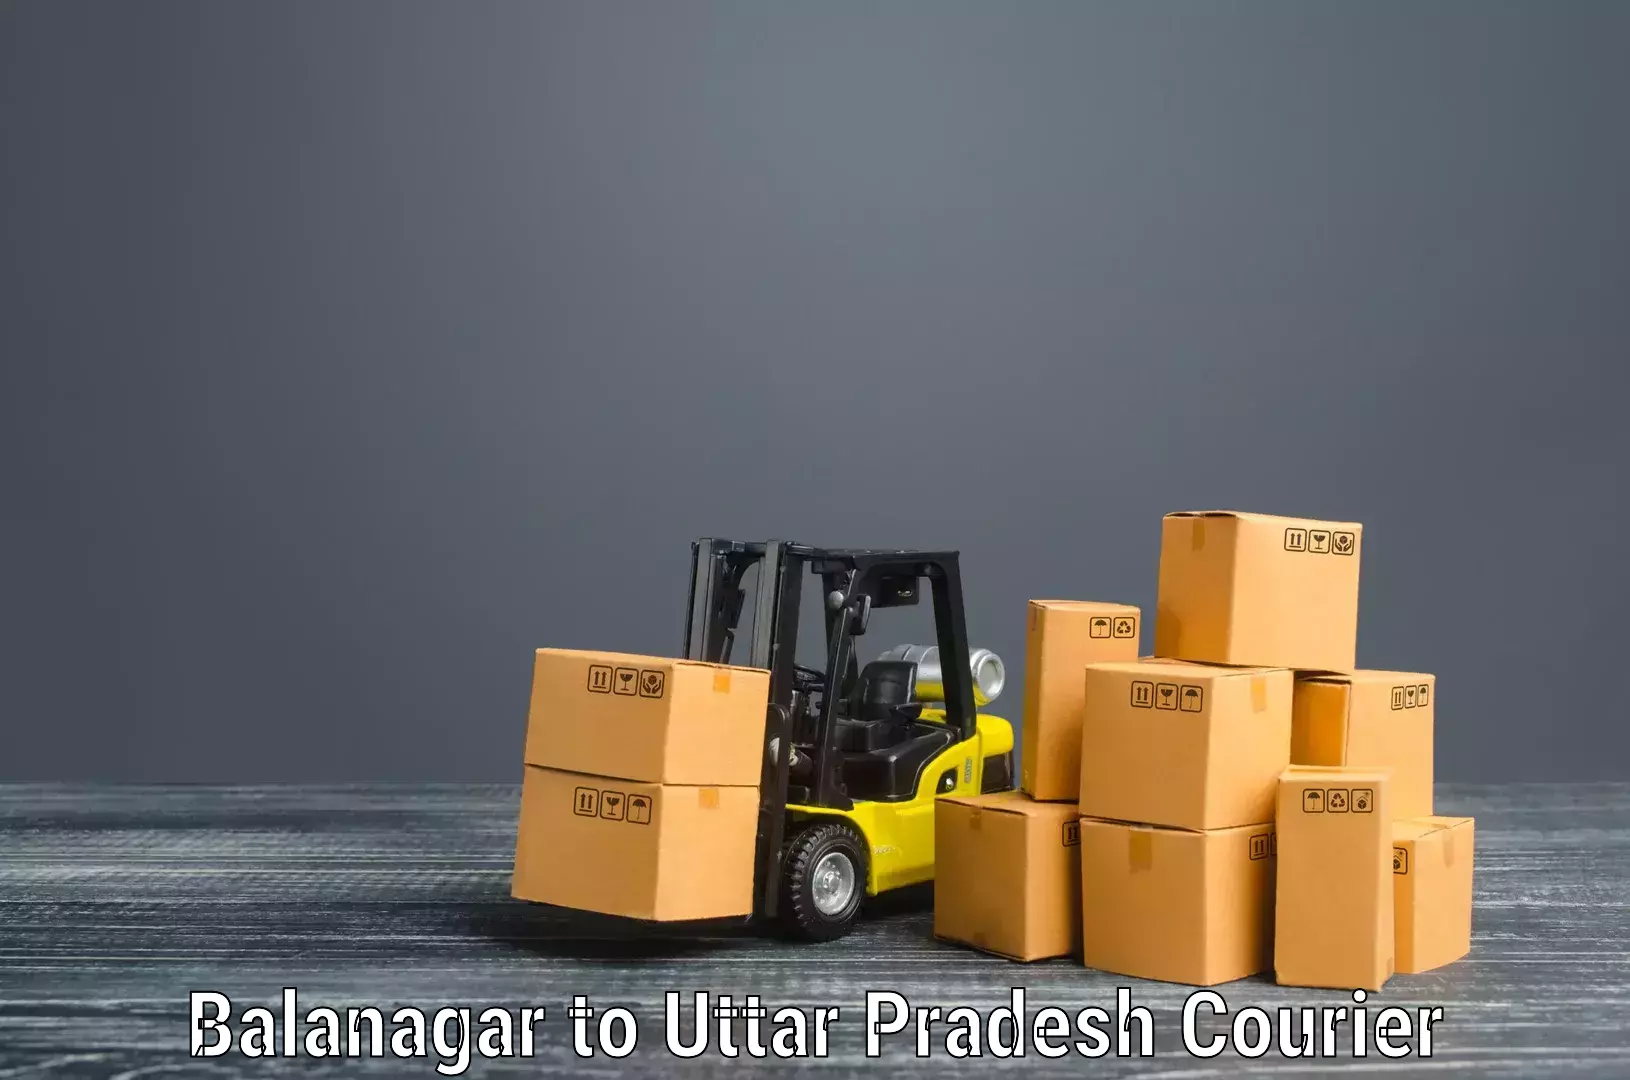 High-quality moving services Balanagar to Bareilly